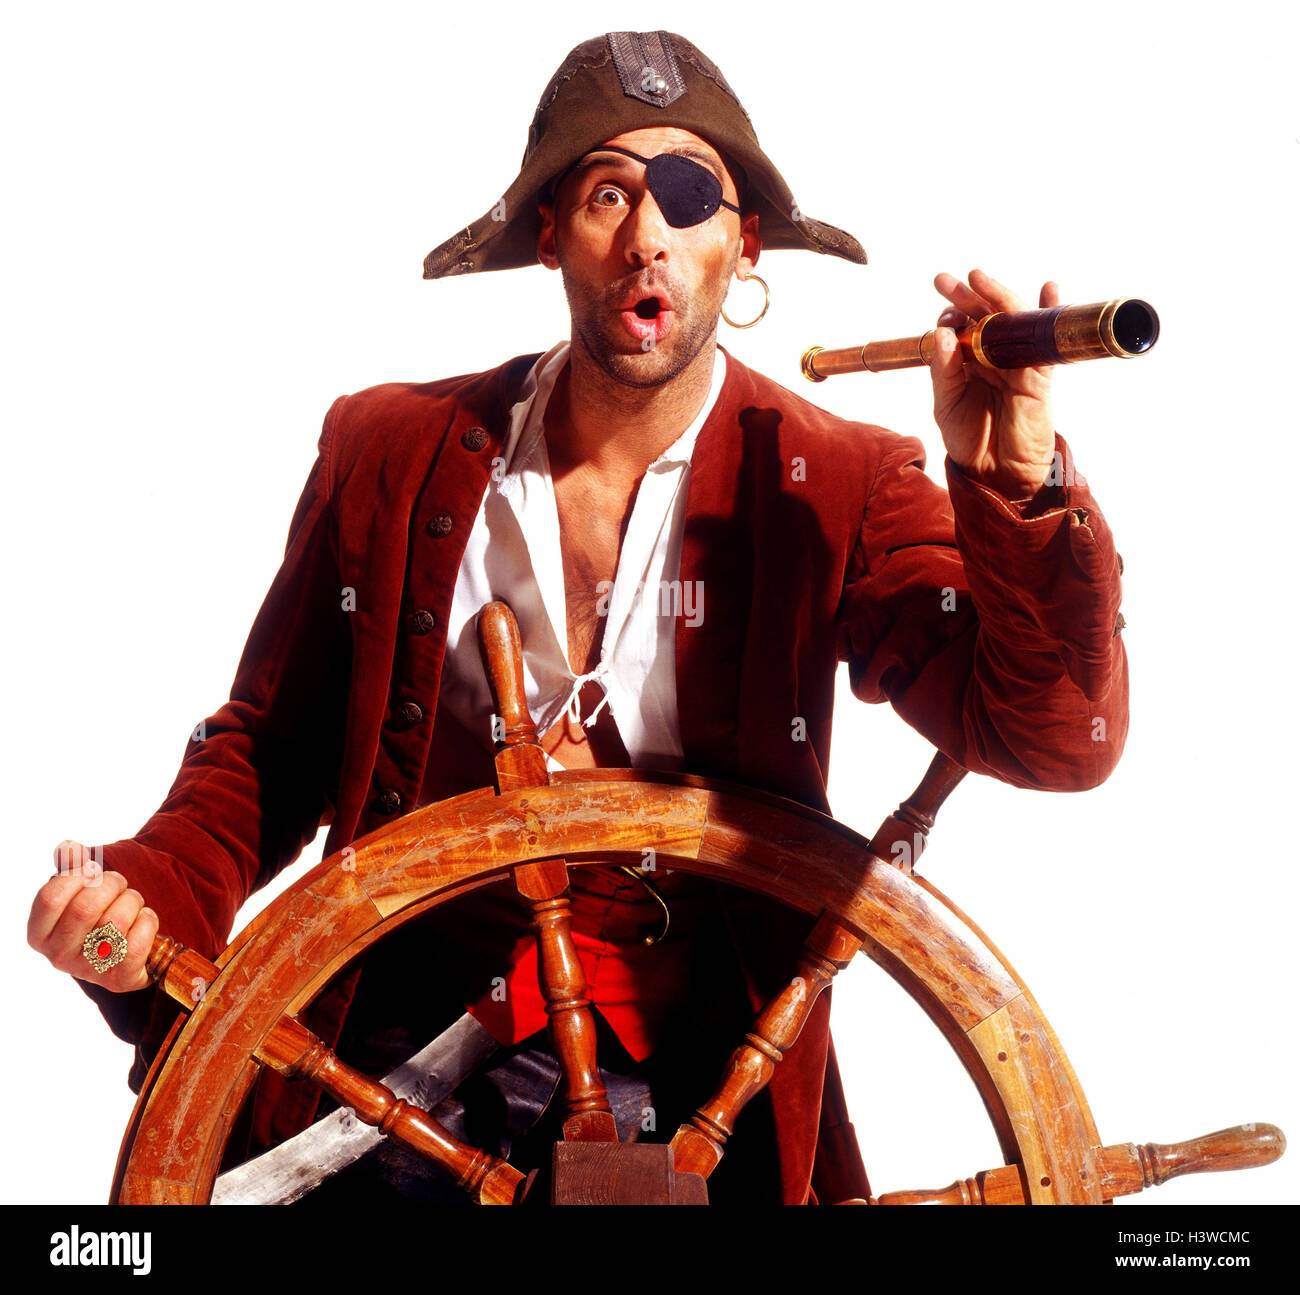 Piraten fernglas -Fotos und -Bildmaterial in hoher Auflösung – Alamy